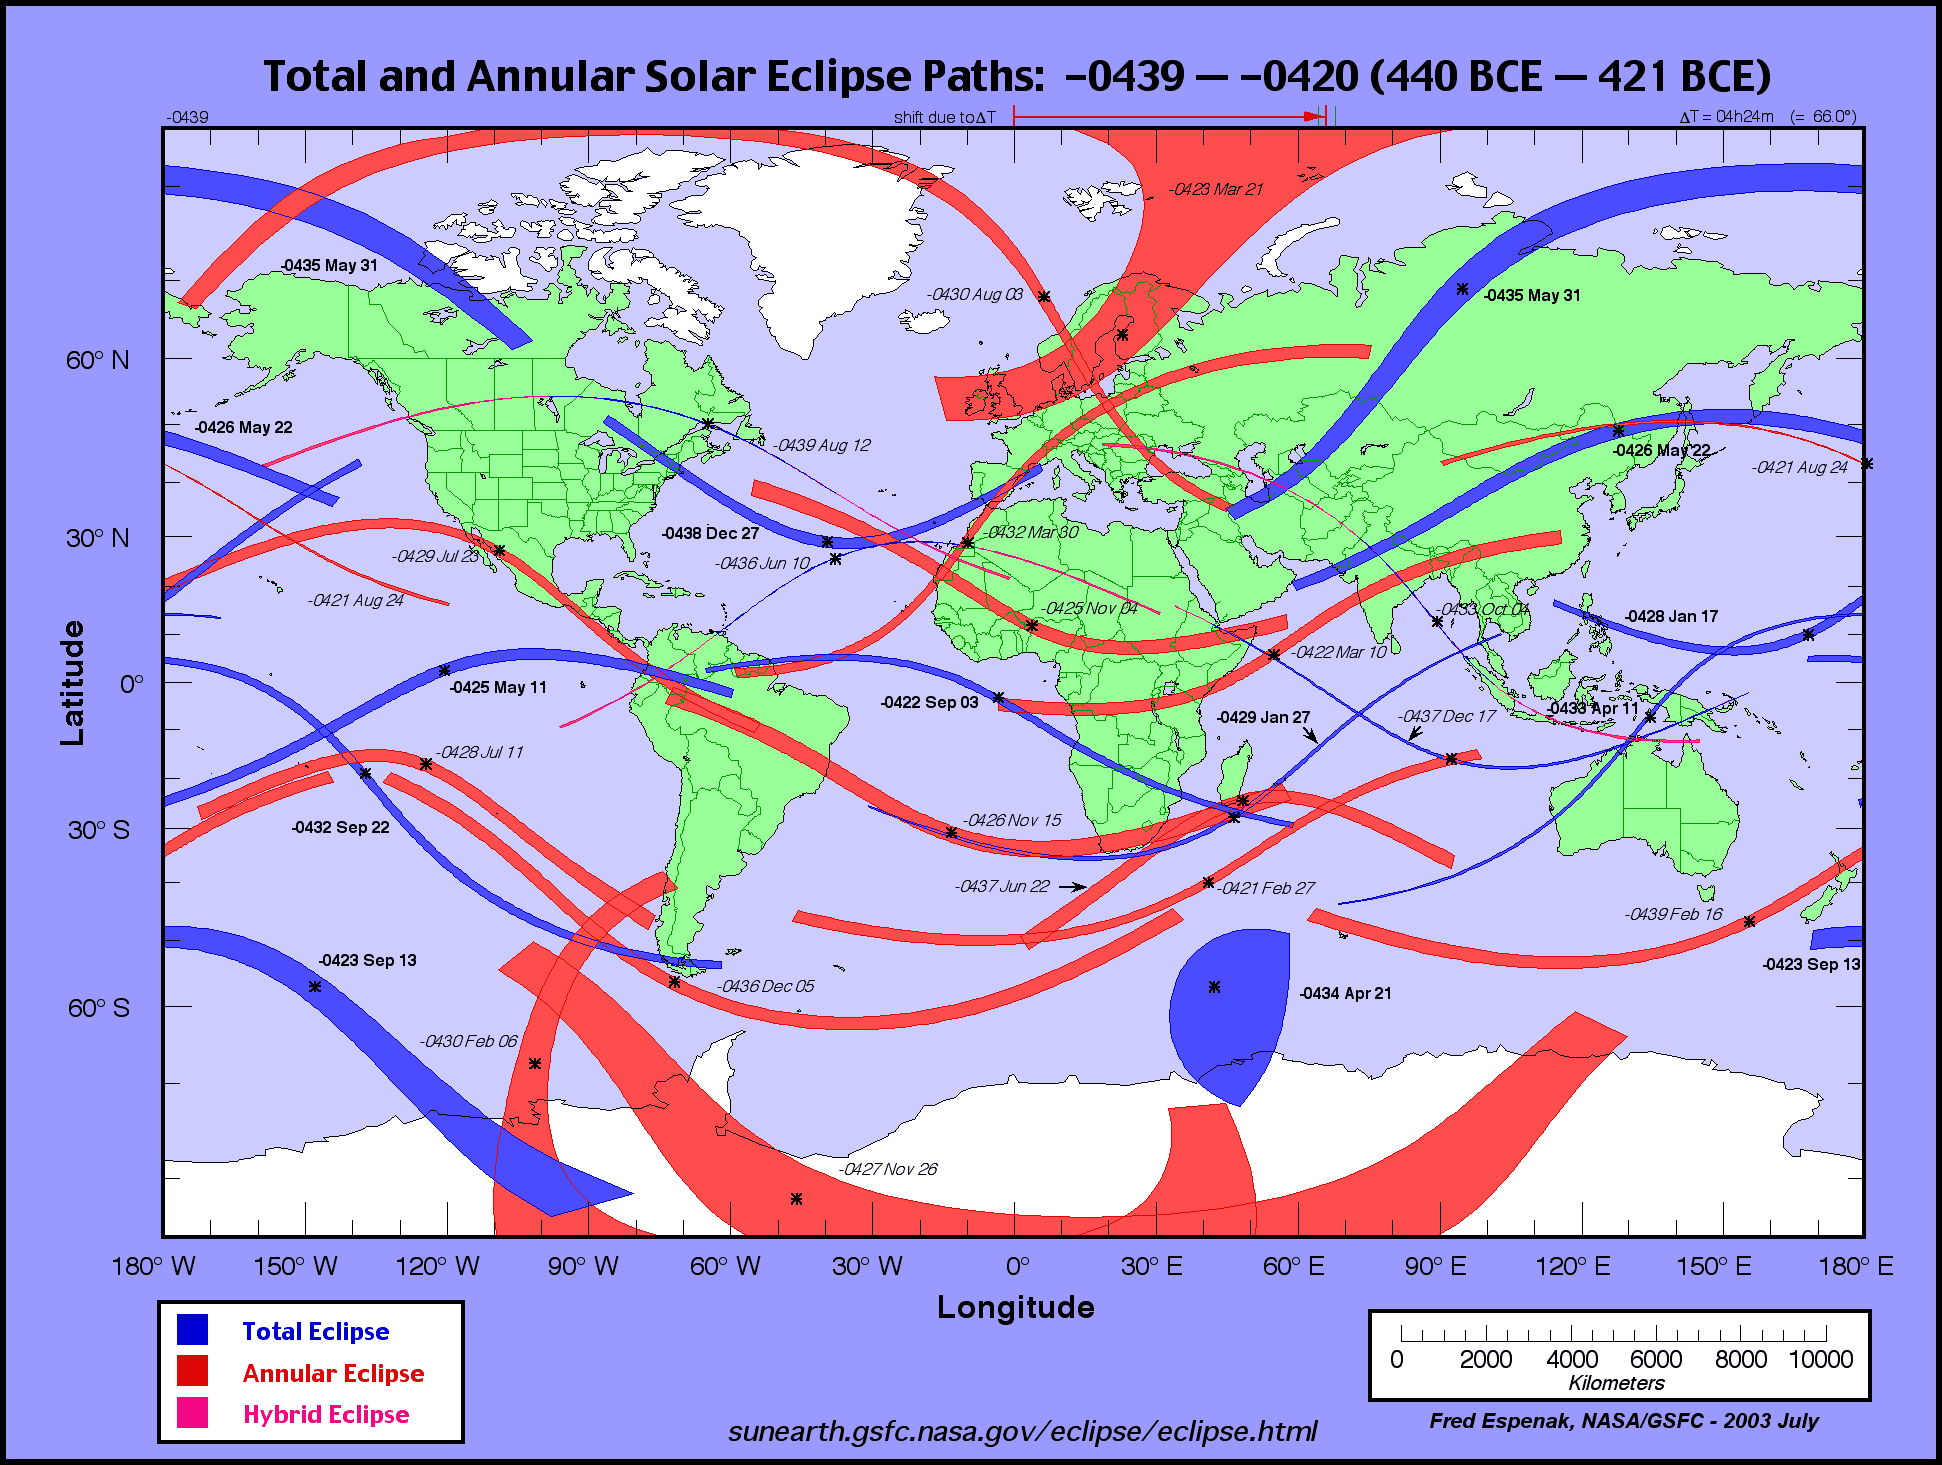 http://eclipse.gsfc.nasa.gov/SEatlas/SEatlas-1/SEatlas-0439.GIF